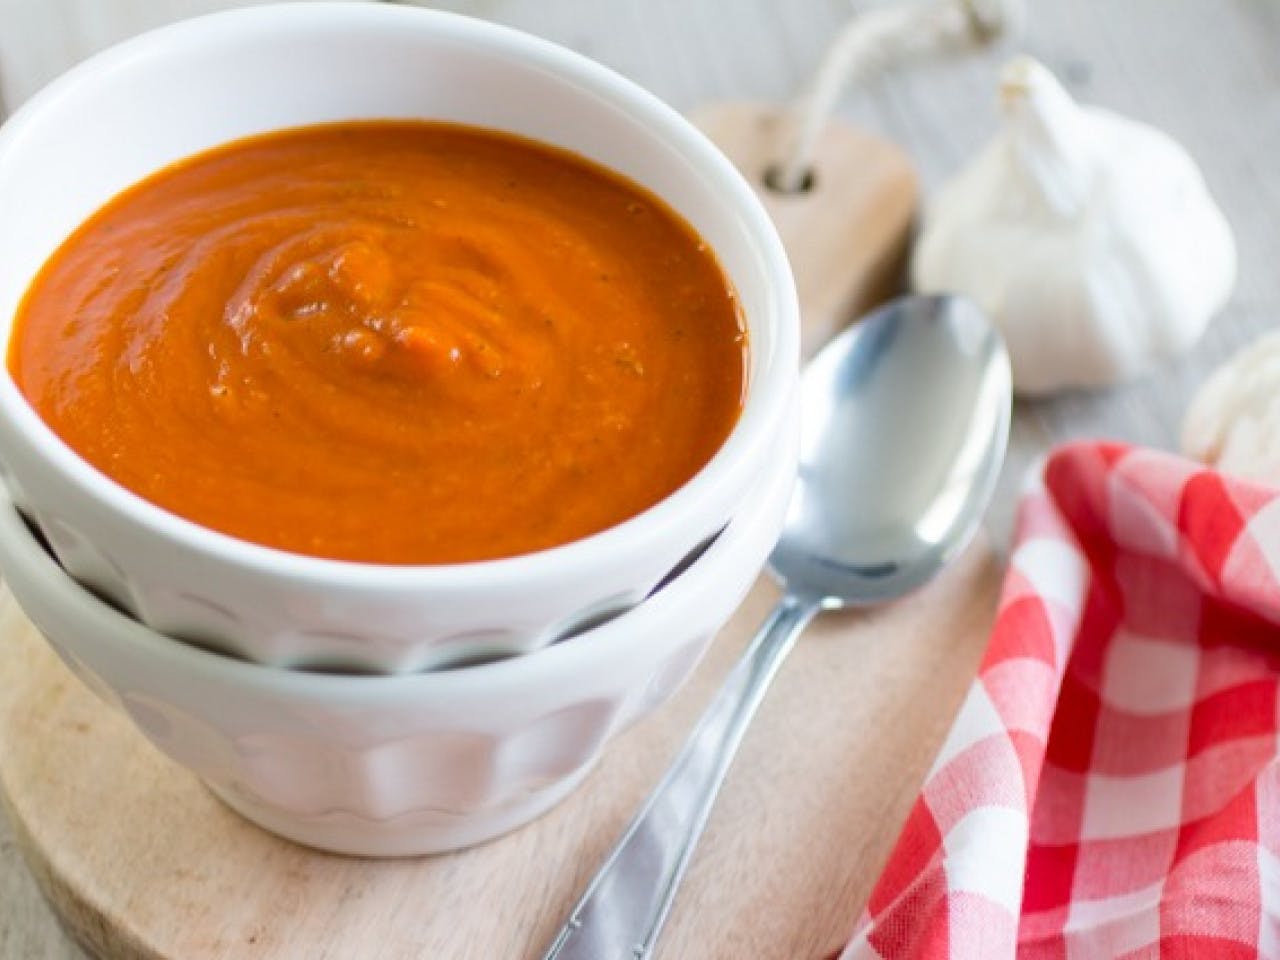 Tomato pumpkin soup